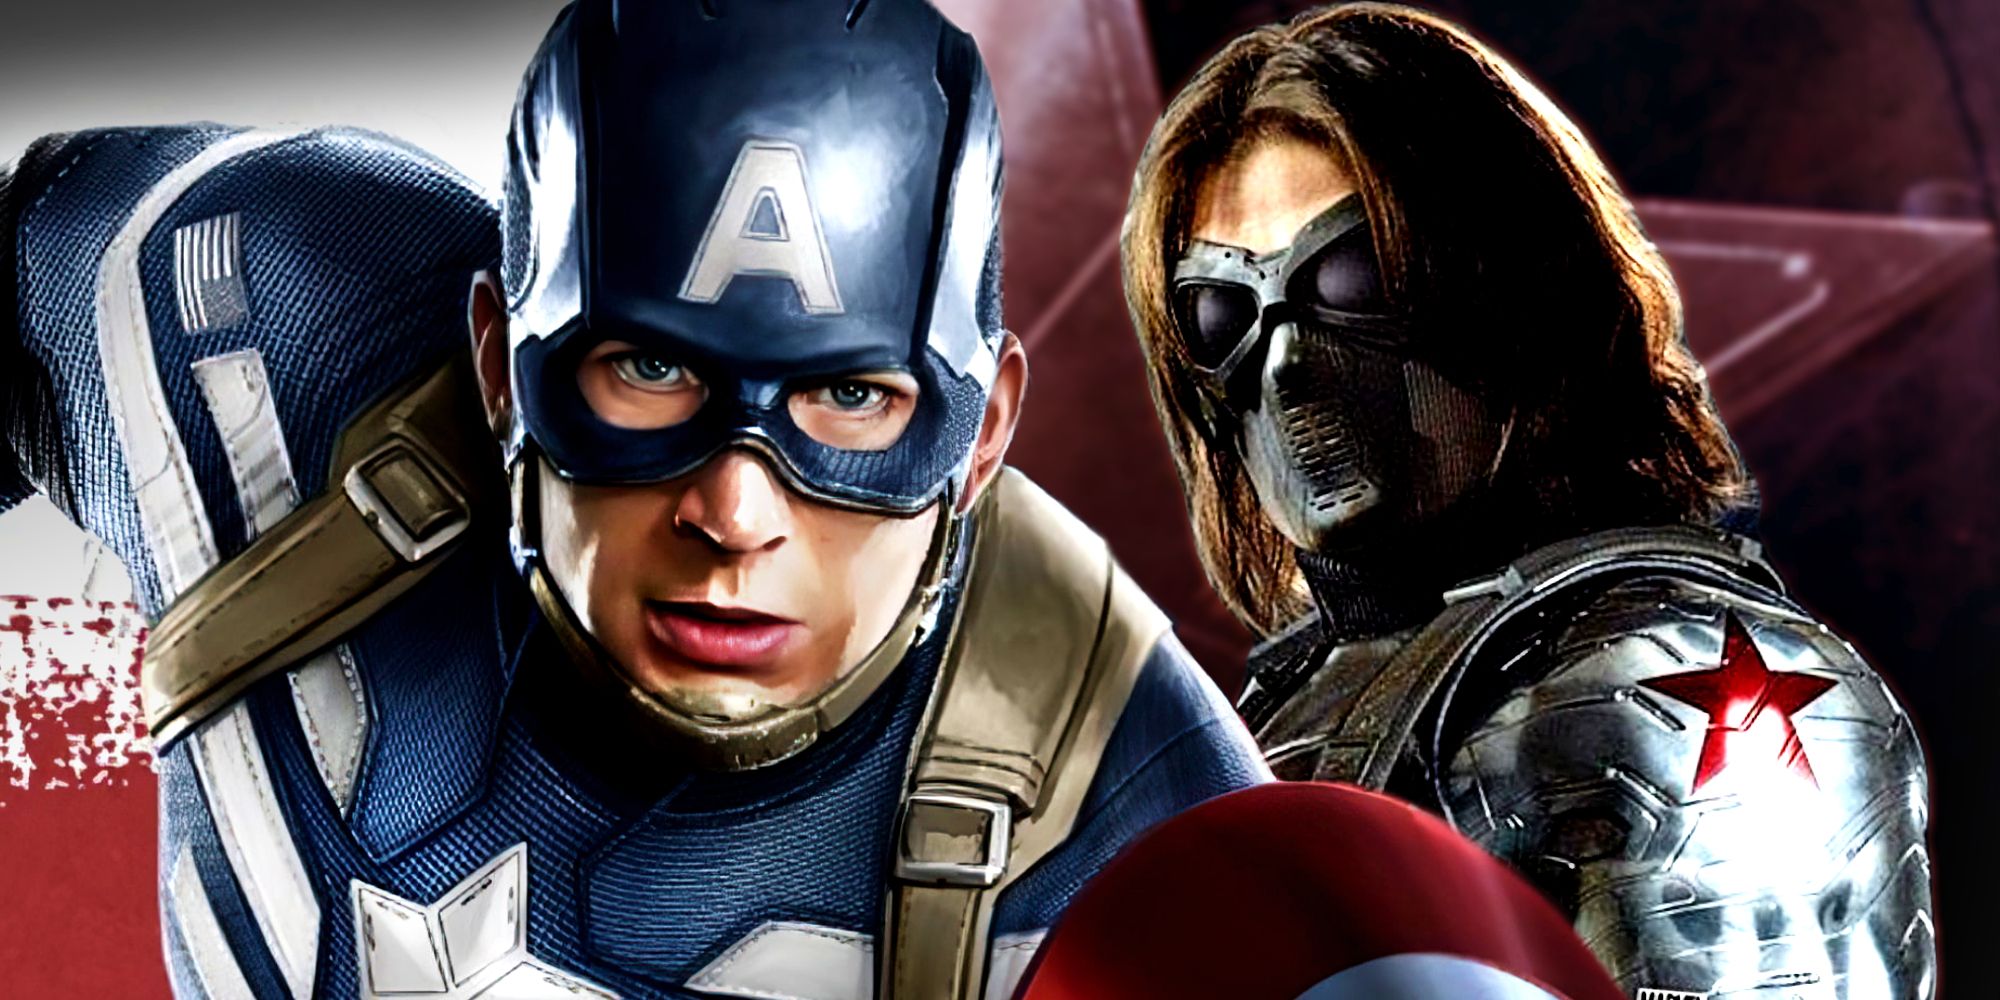 Los directores de Capitán América: El Soldado de Invierno celebran 10 años desde el lanzamiento de la película MCU con videos y detalles del set de acción